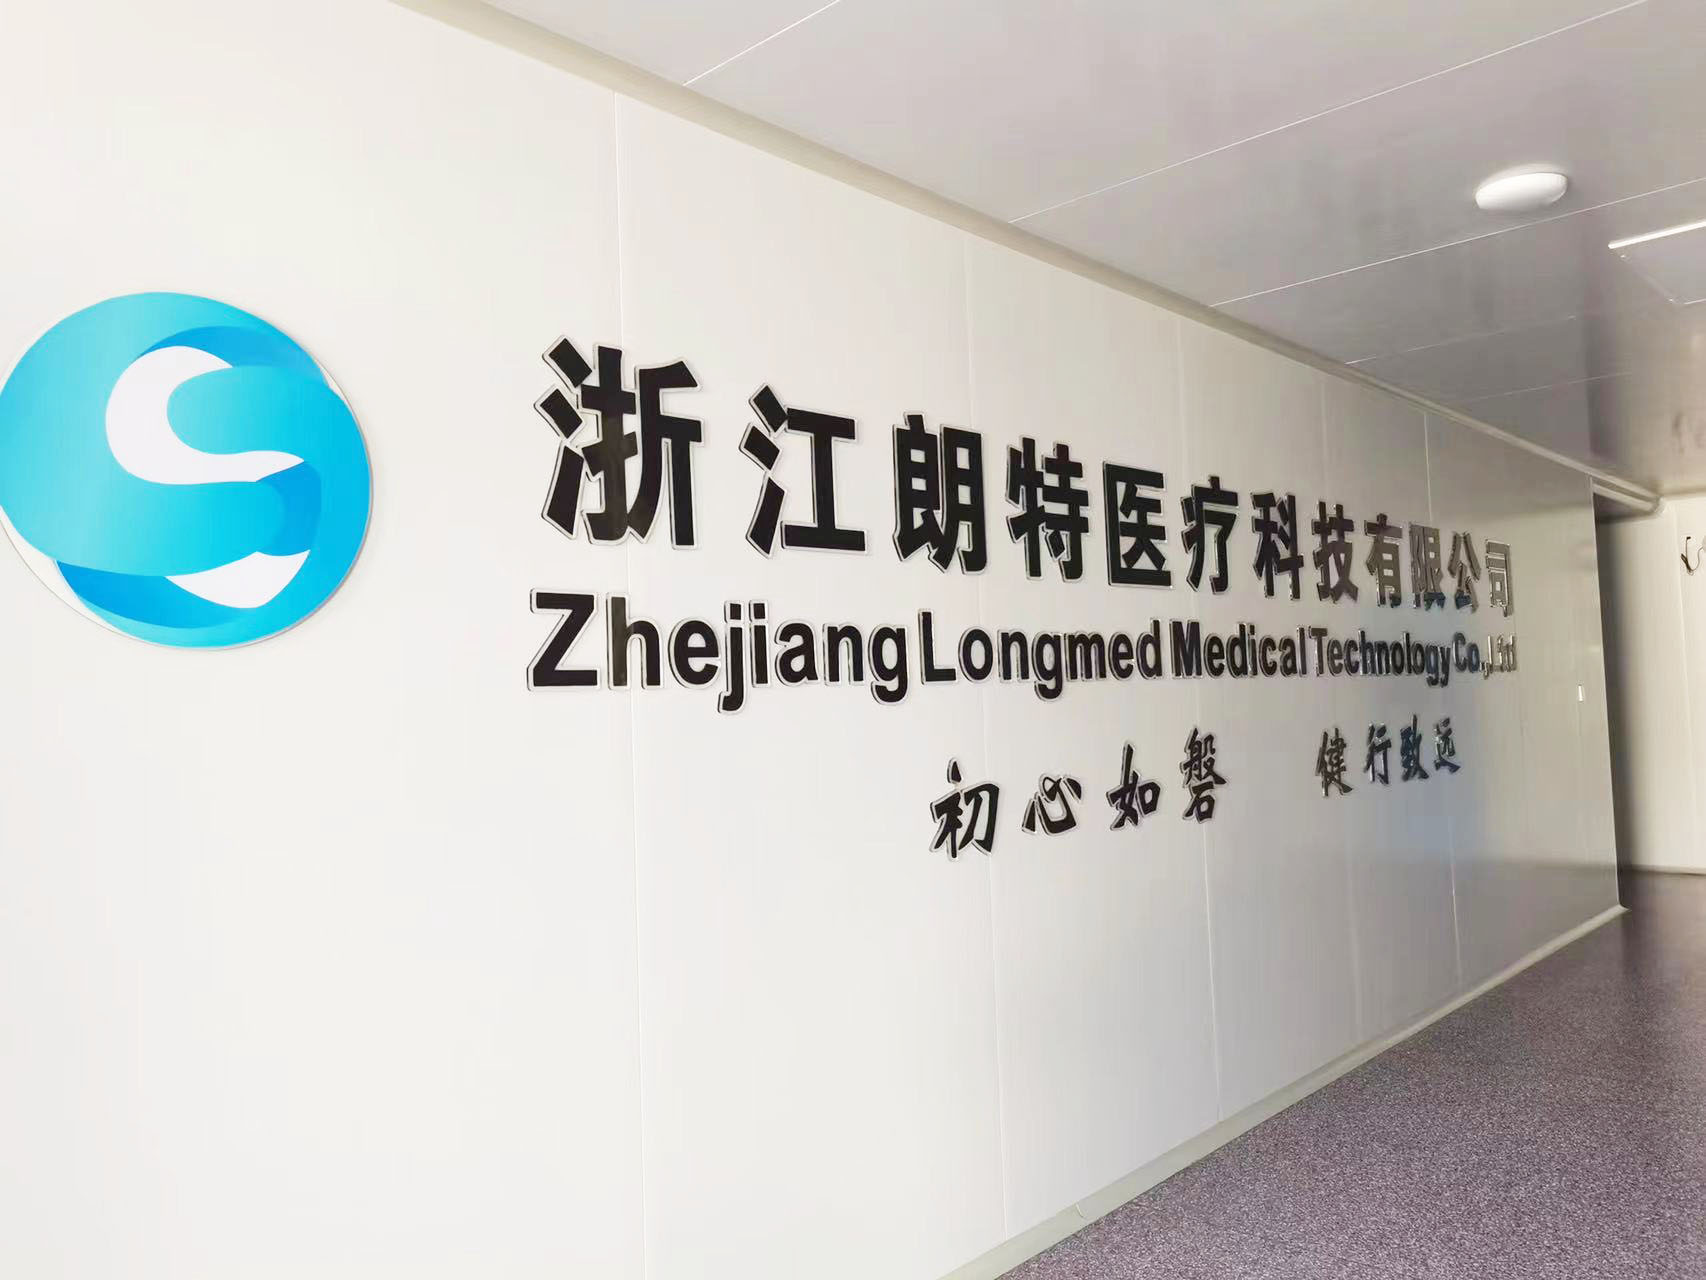 Zhejiang Longmed Medische Technology Co., Ltd